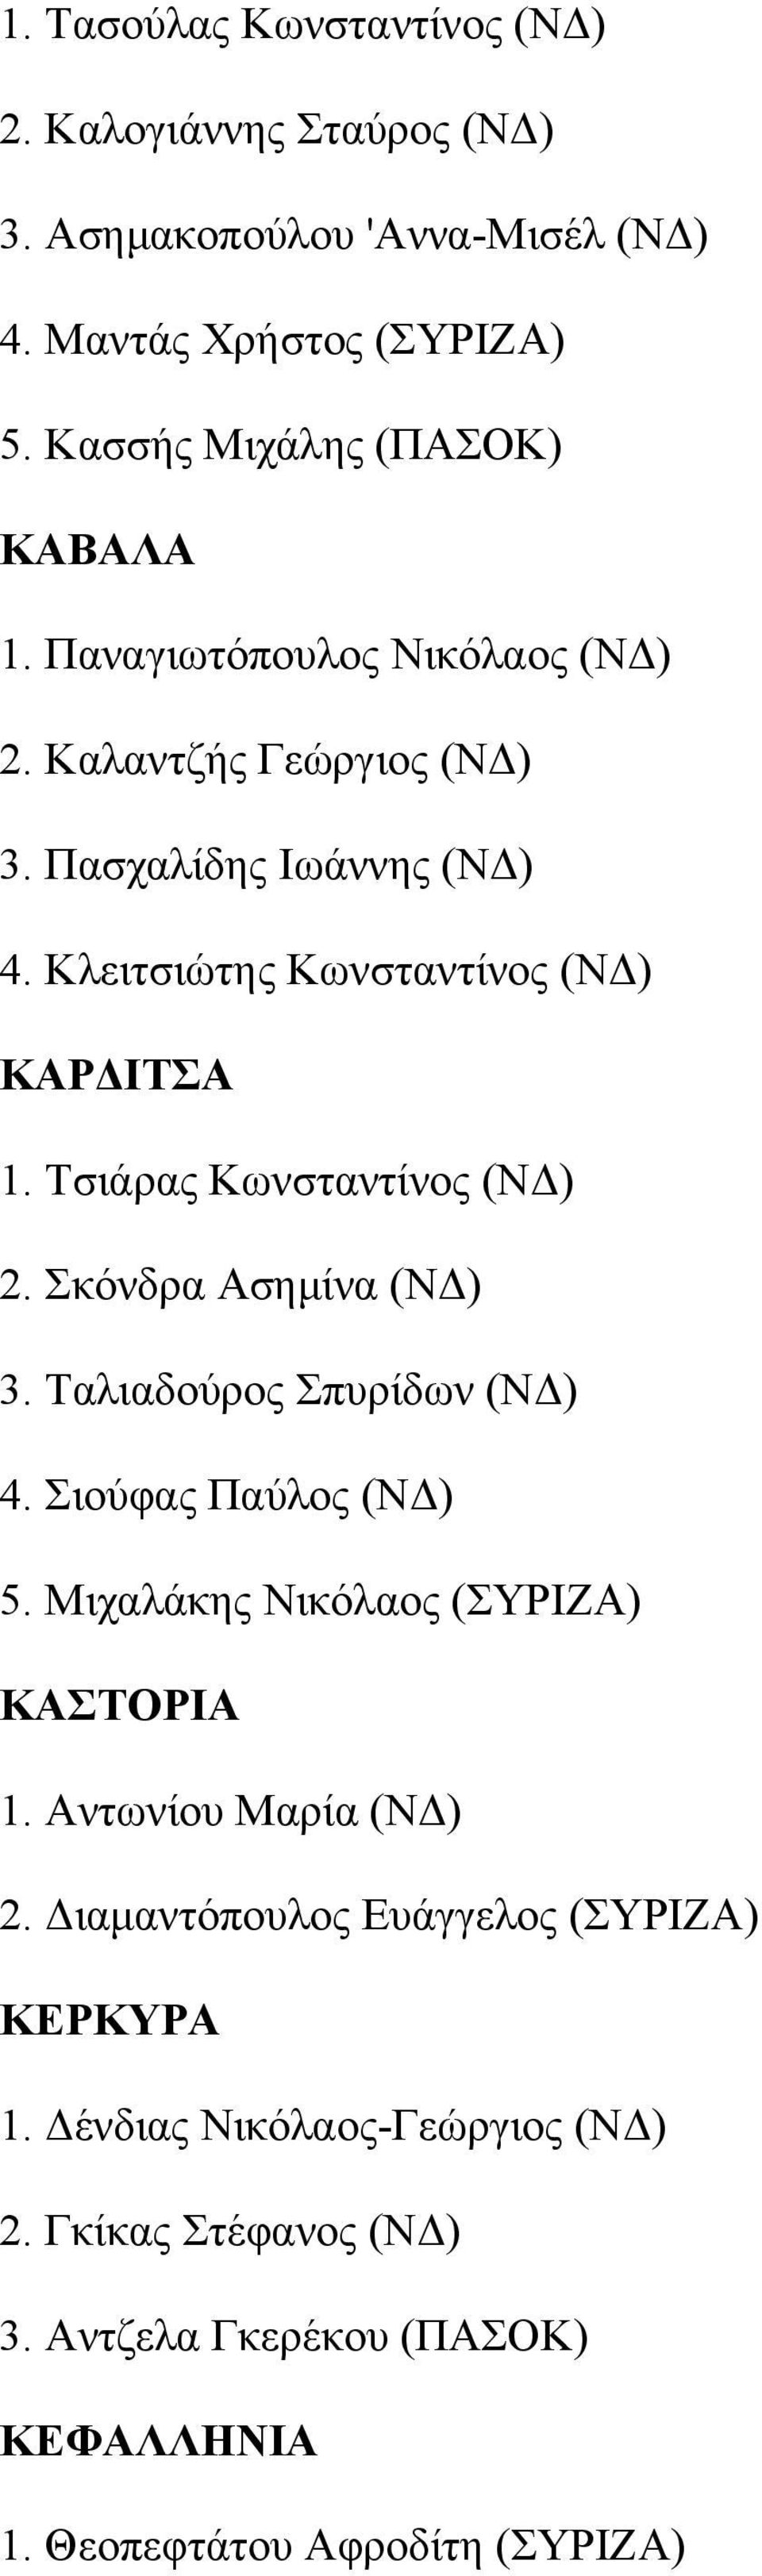 Τσιάρας Κωνσταντίνος (ΝΔ) 2. Σκόνδρα Ασημίνα (ΝΔ) 3. Ταλιαδούρος Σπυρίδων (ΝΔ) 4. Σιούφας Παύλος (ΝΔ) 5. Μιχαλάκης Νικόλαος (ΣΥΡΙΖΑ) ΚΑΣΤΟΡΙΑ 1.